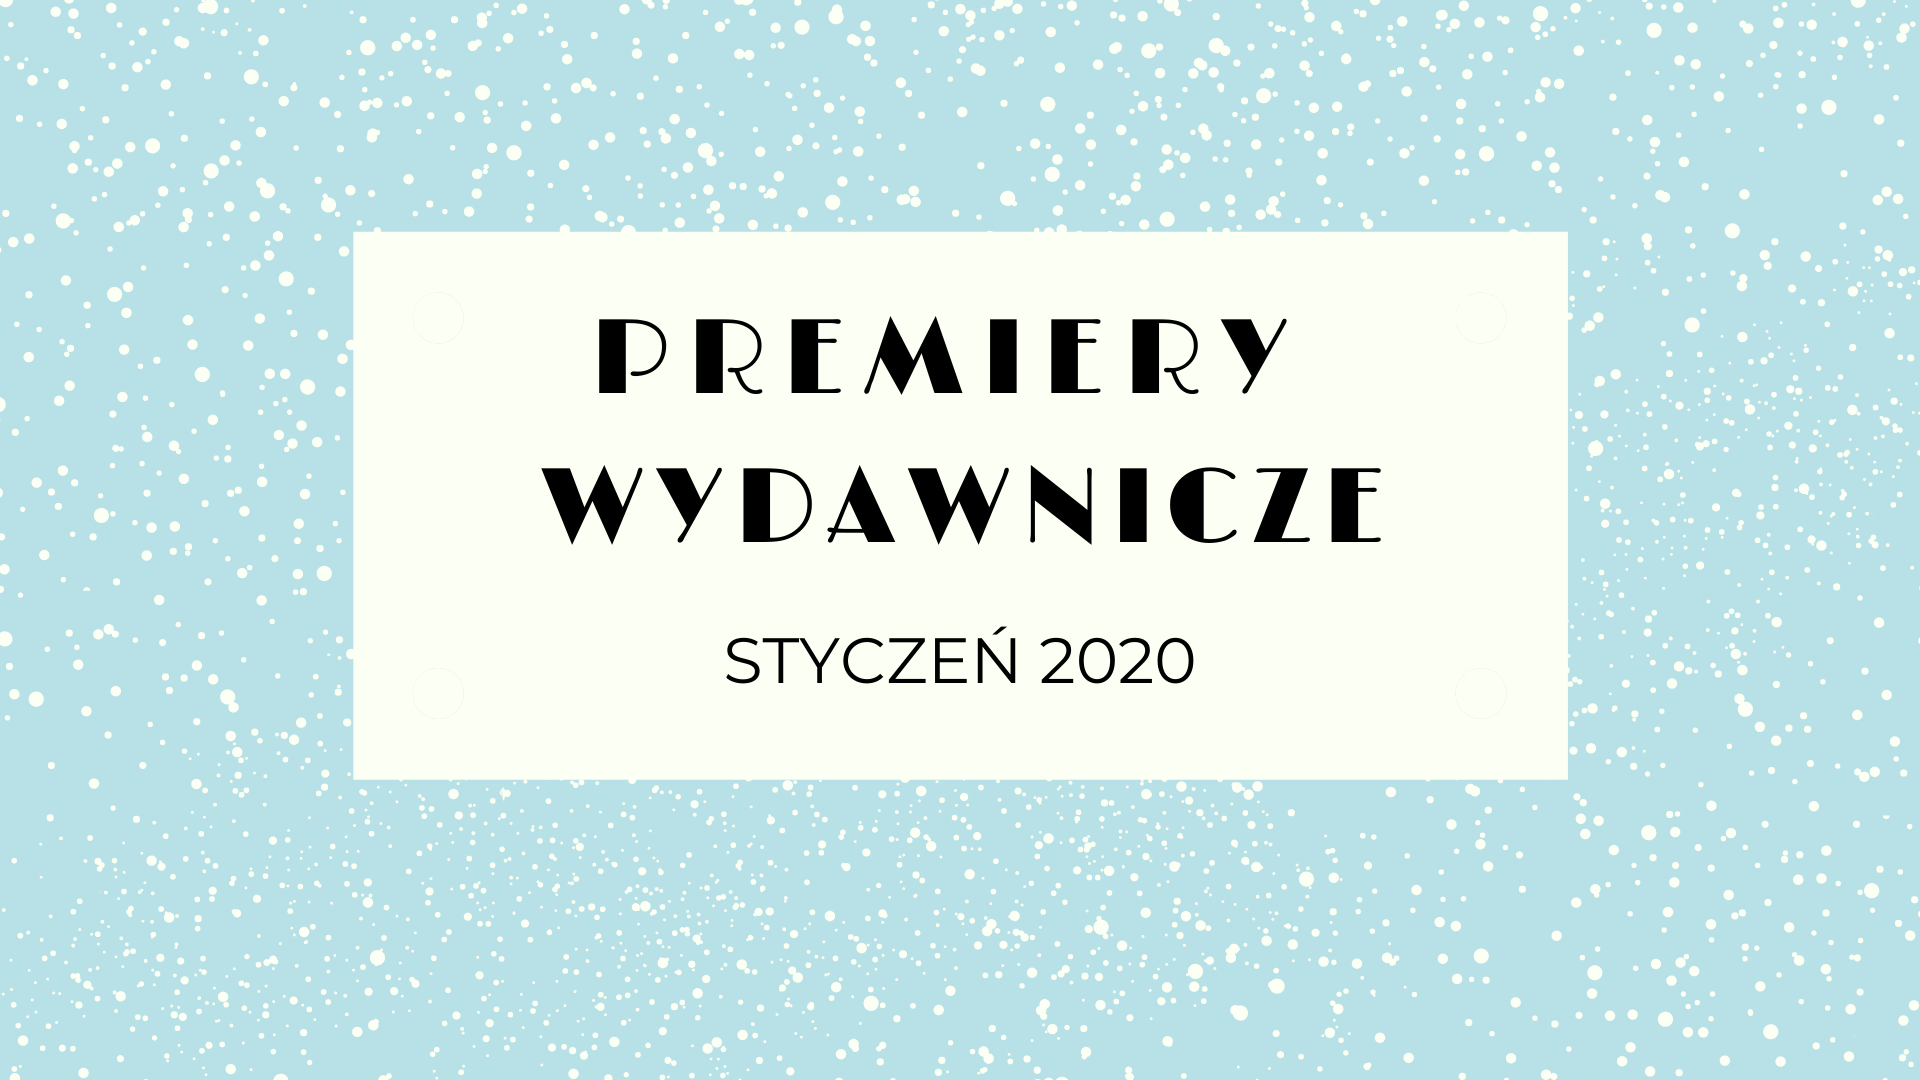 Premiery wydawnicze - styczeń 2020